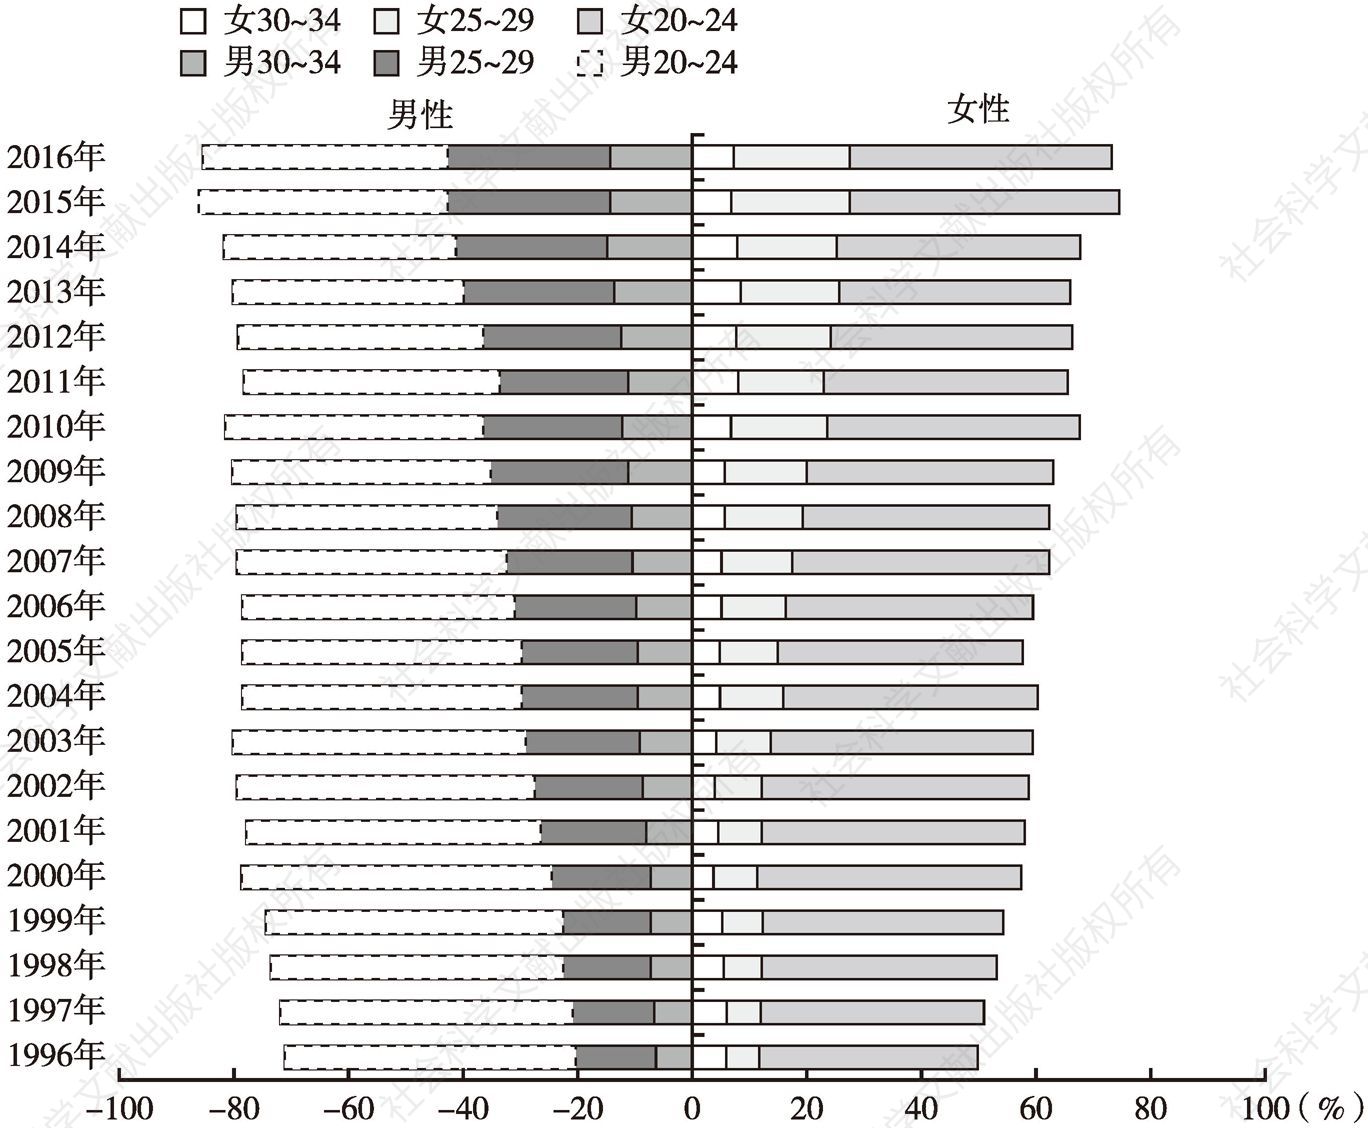 图2 不同年份不同年龄段未婚男性和女性的比例